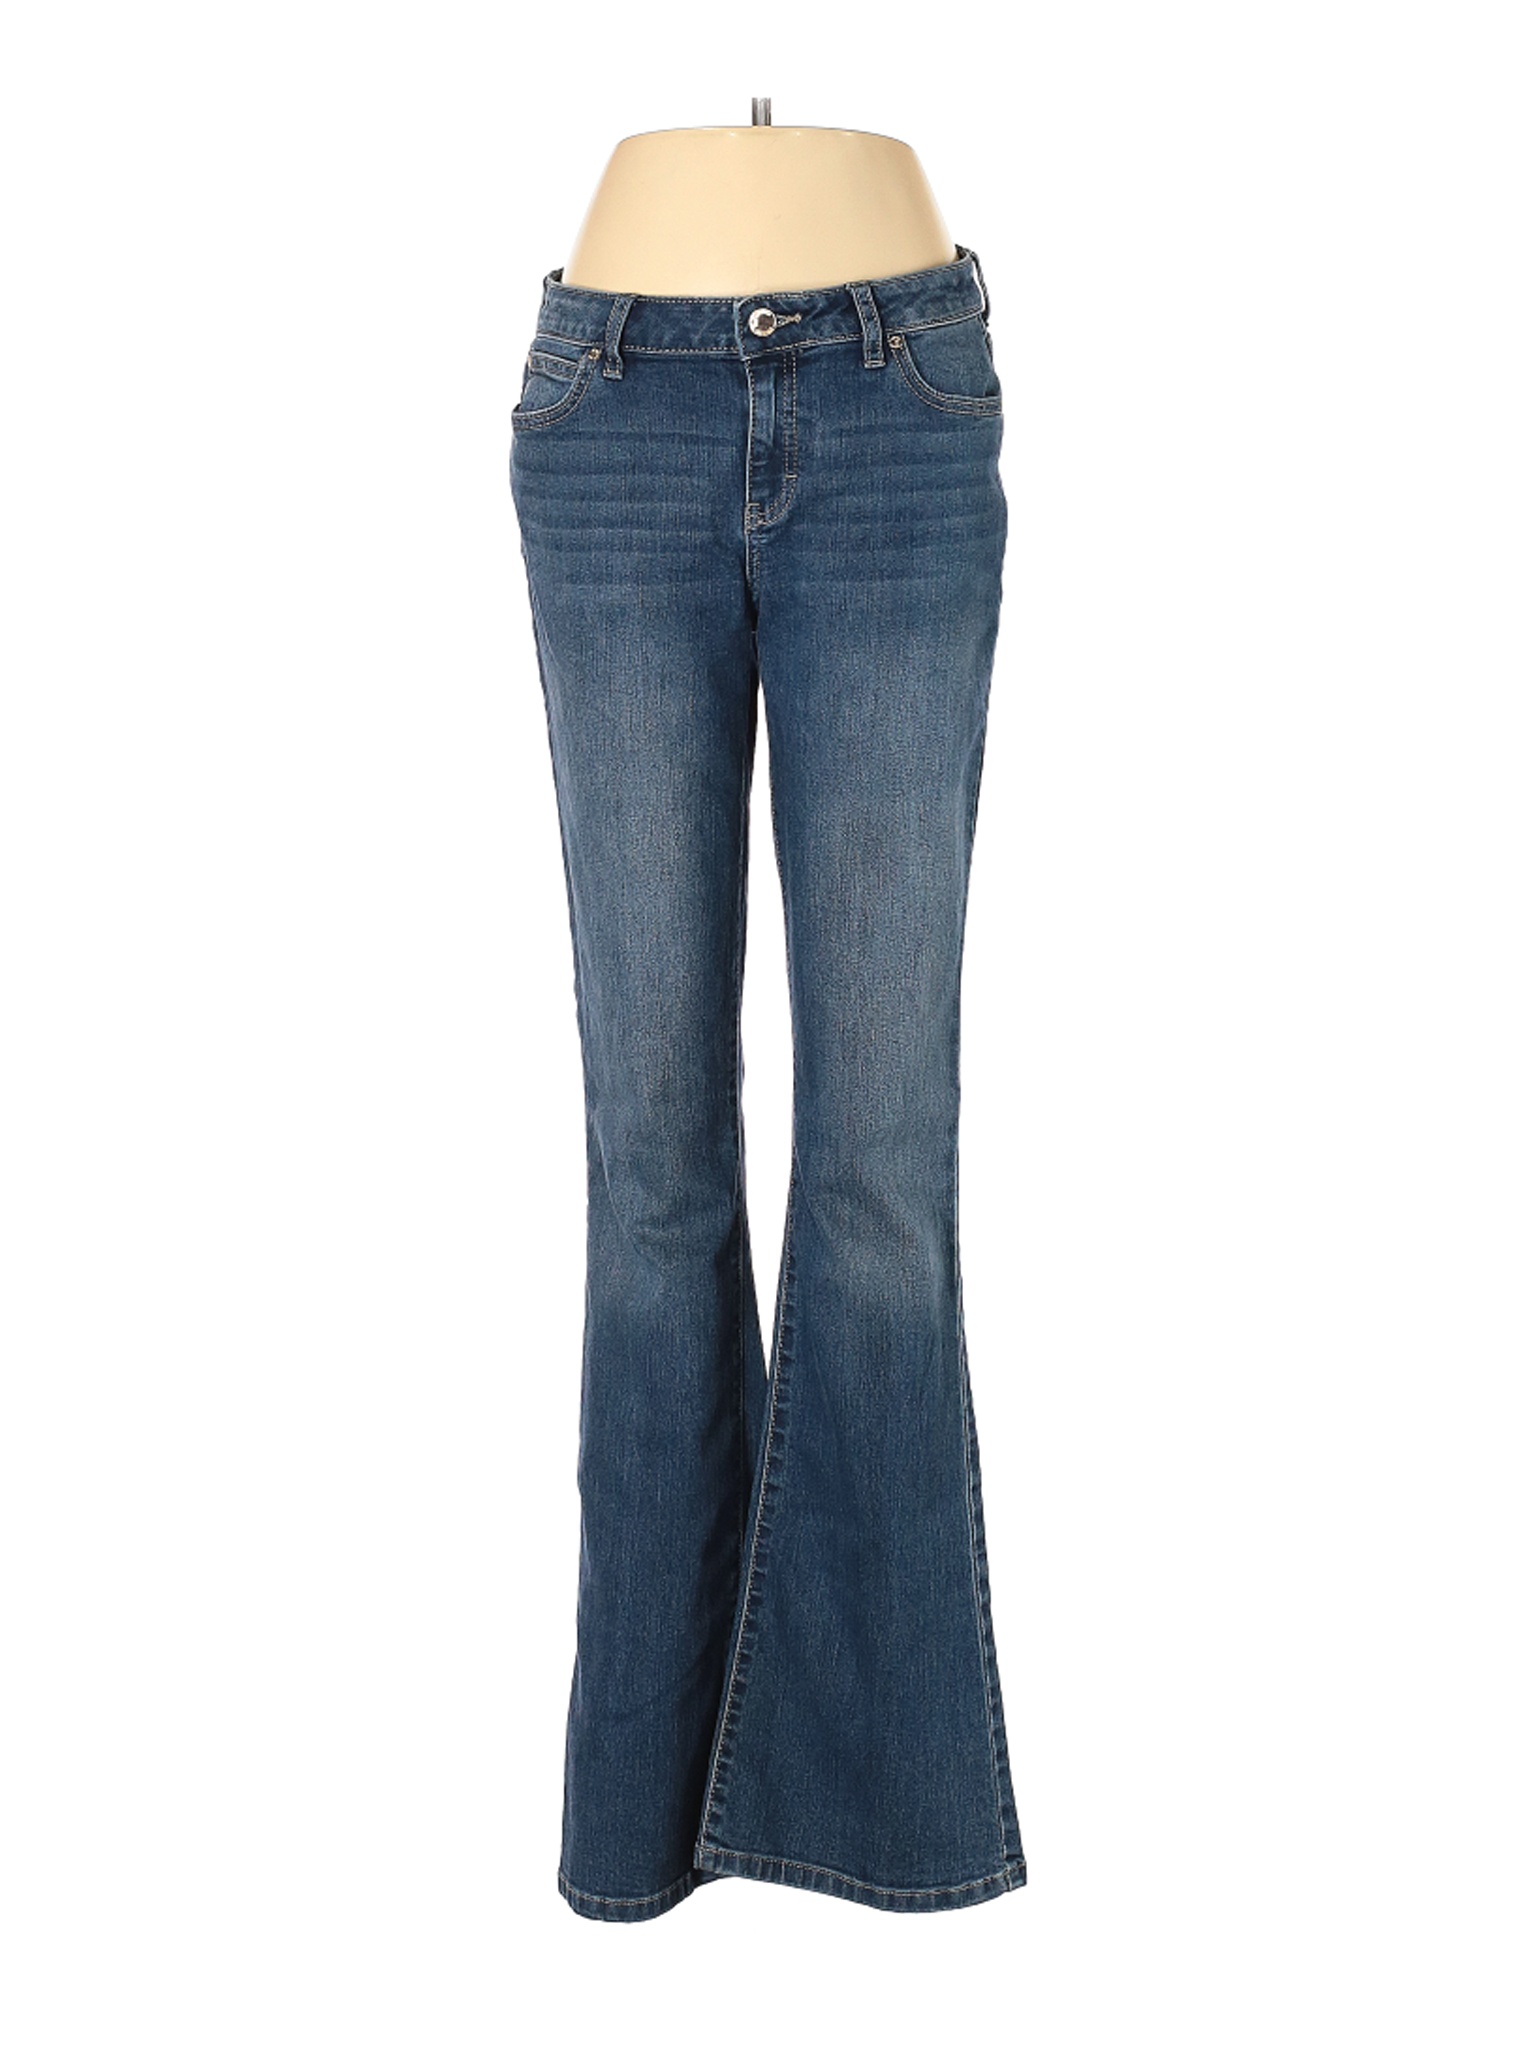 Jennifer Lopez Women Blue Jeans 8 | eBay